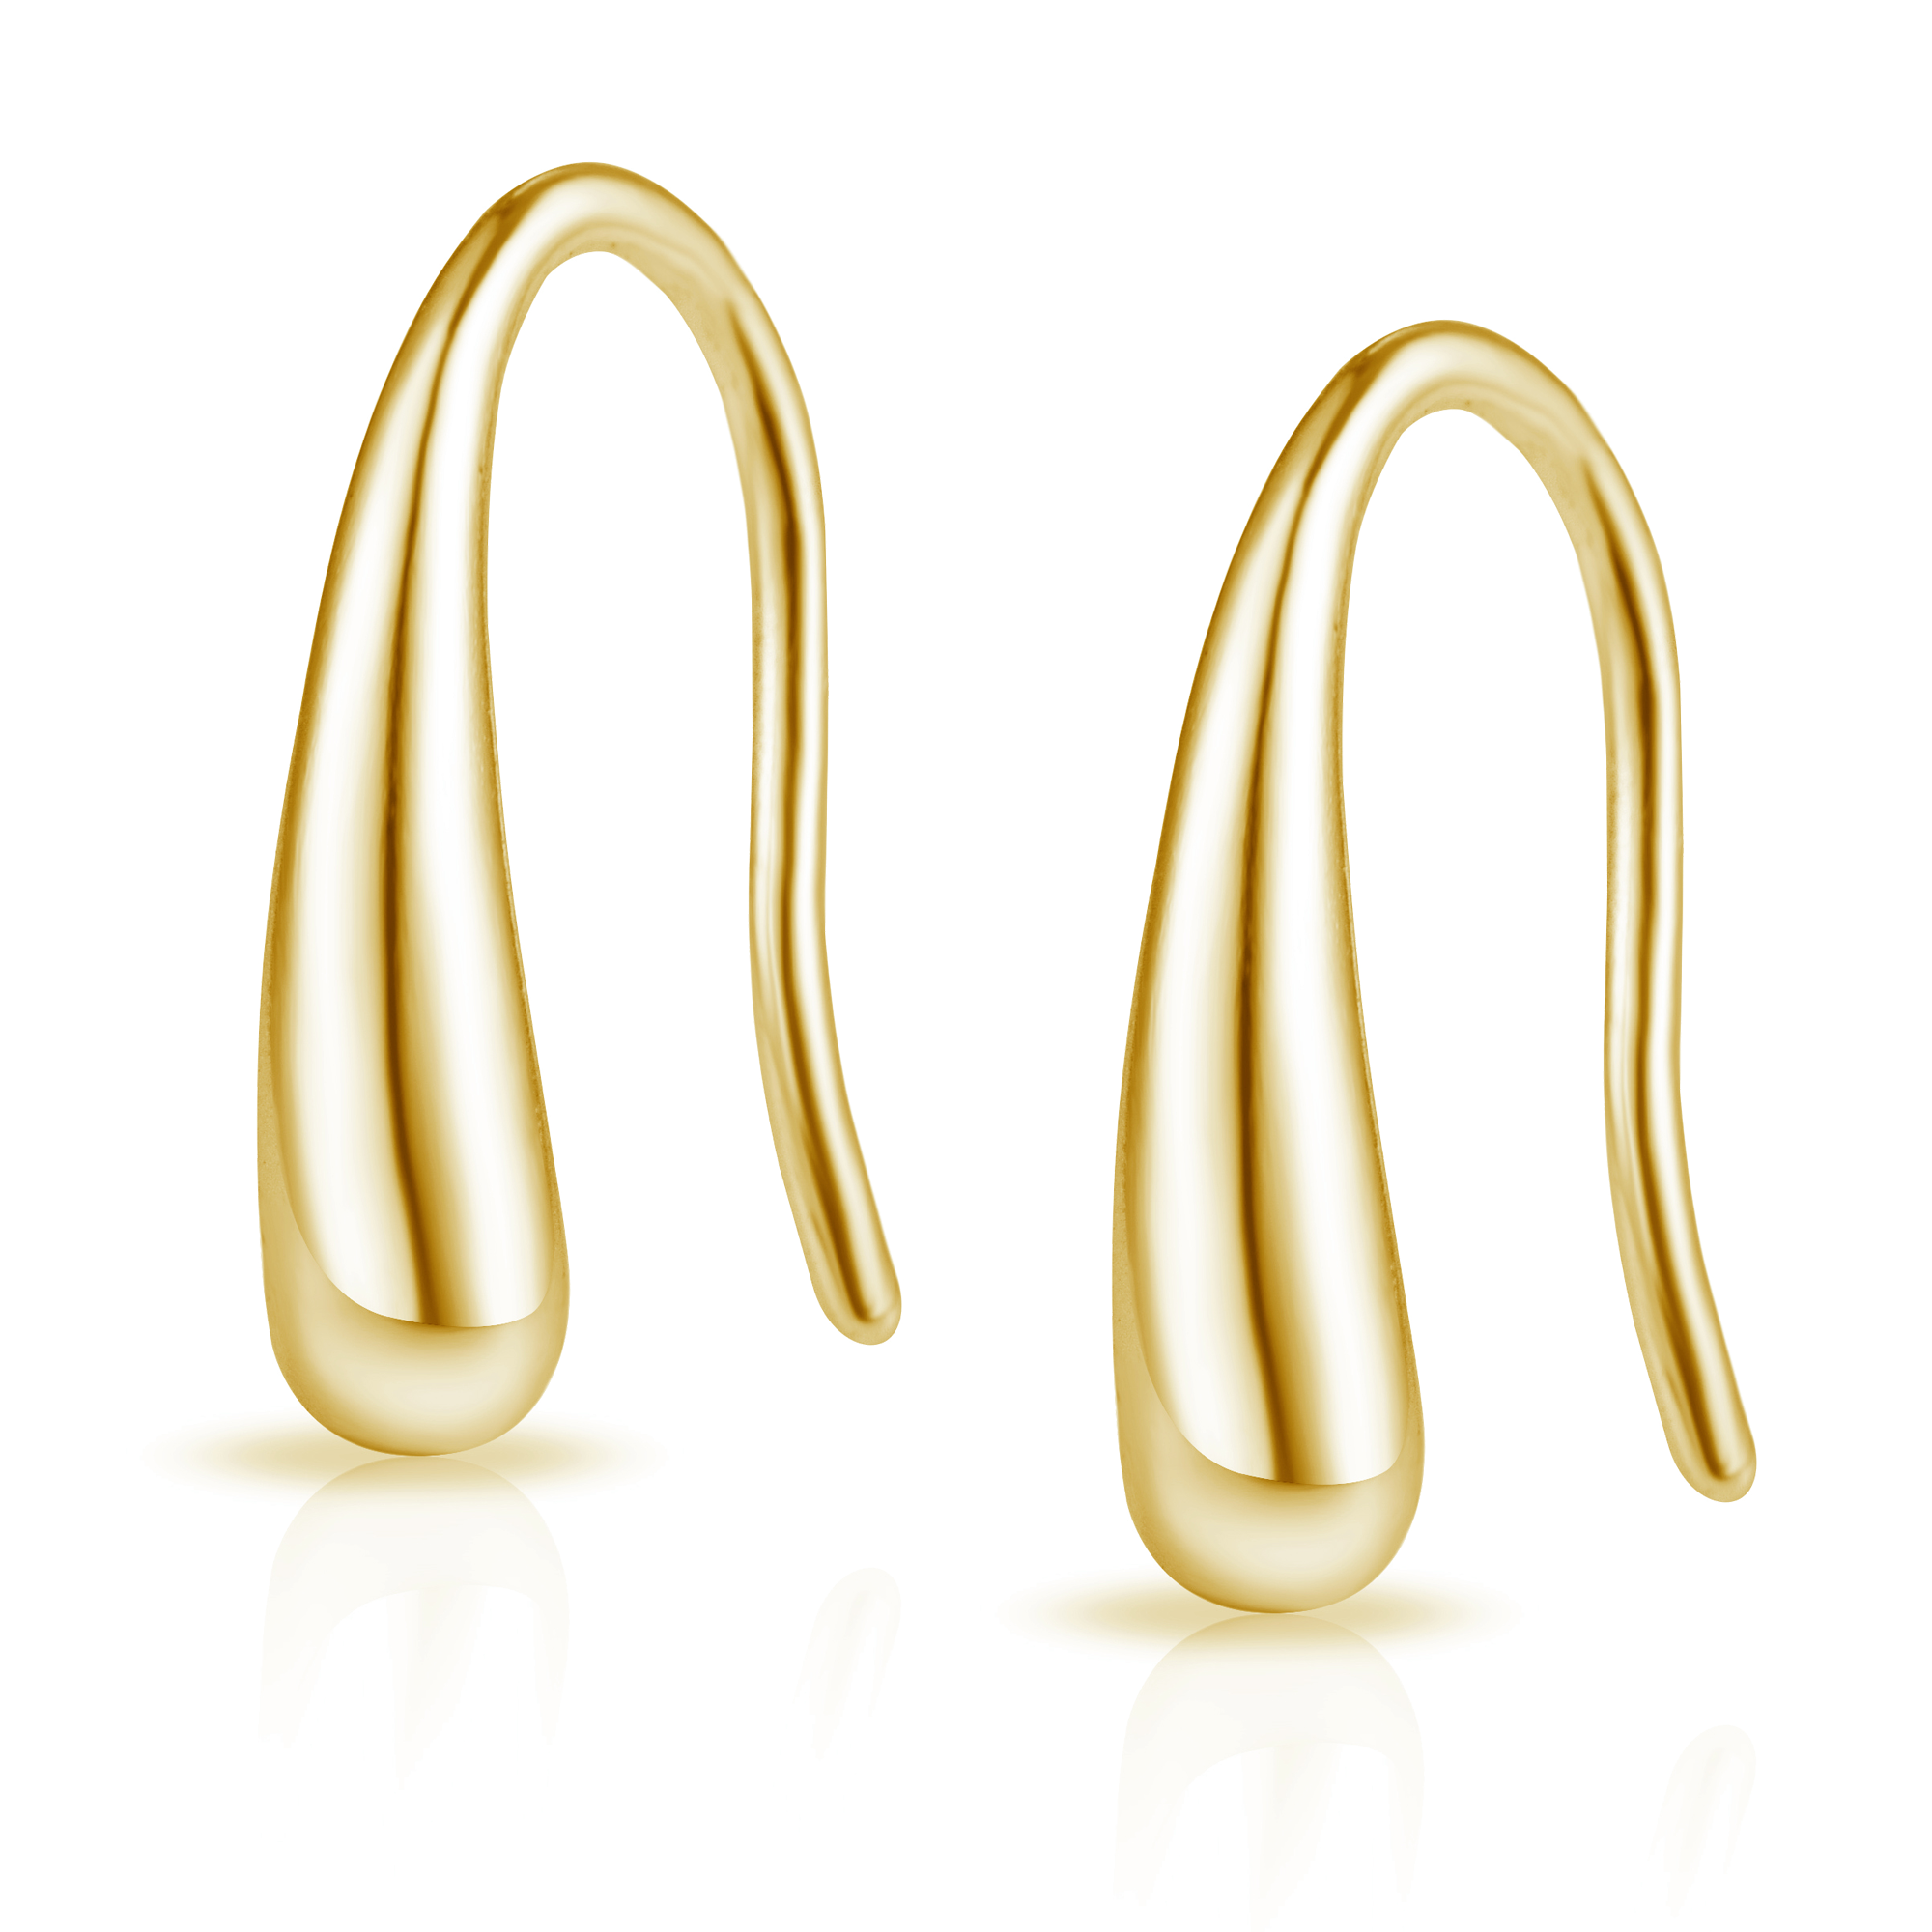 Gold Plated Sterling Silver Teardrop Earrings by Philip Jones Jewellery